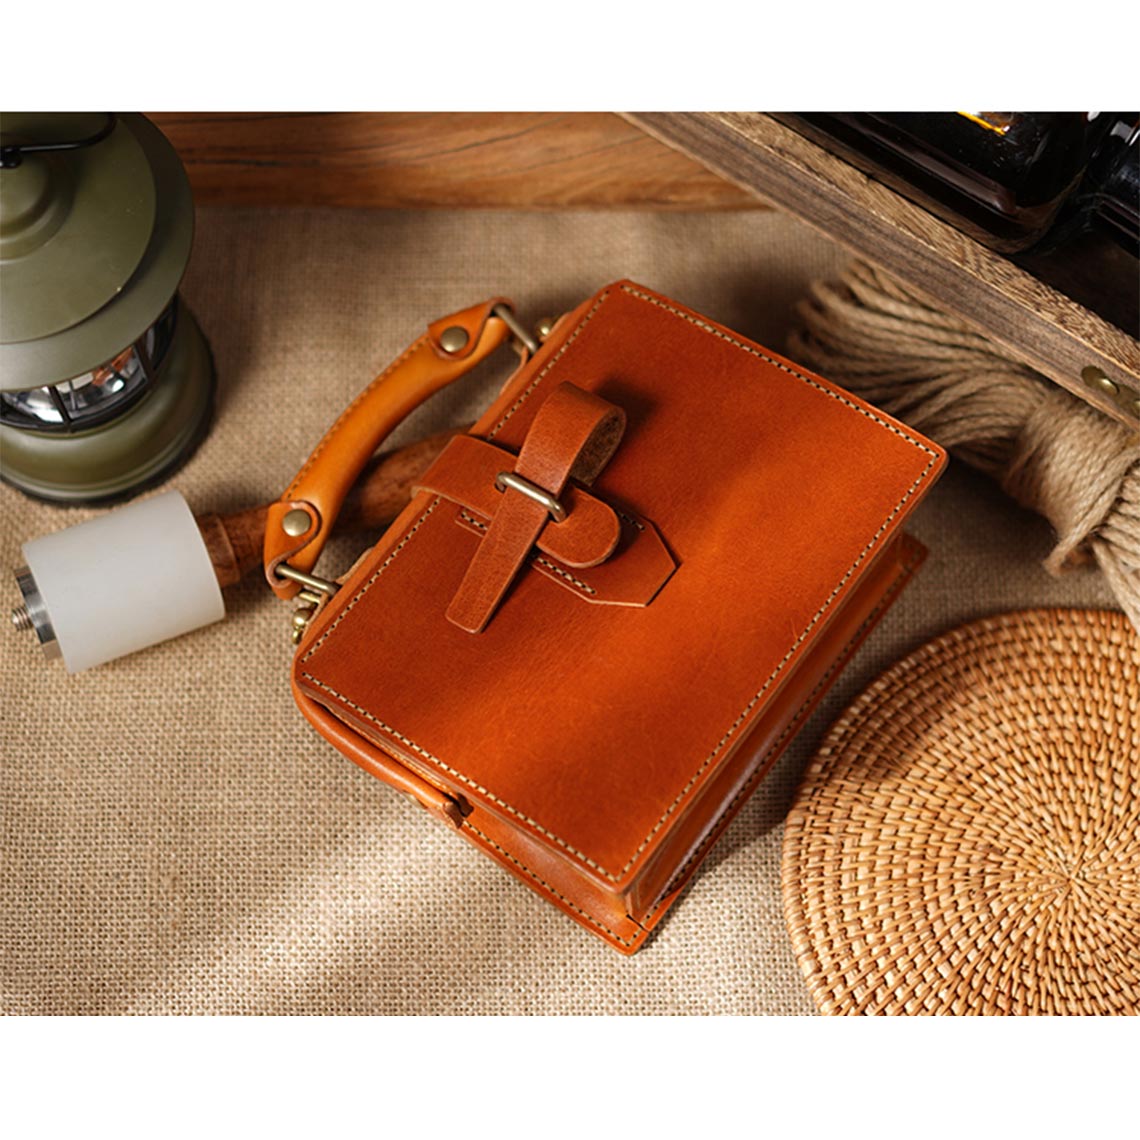 DIY Leather Handbag Making Kit | Make Your Own Bag at Home - POPSEWING®